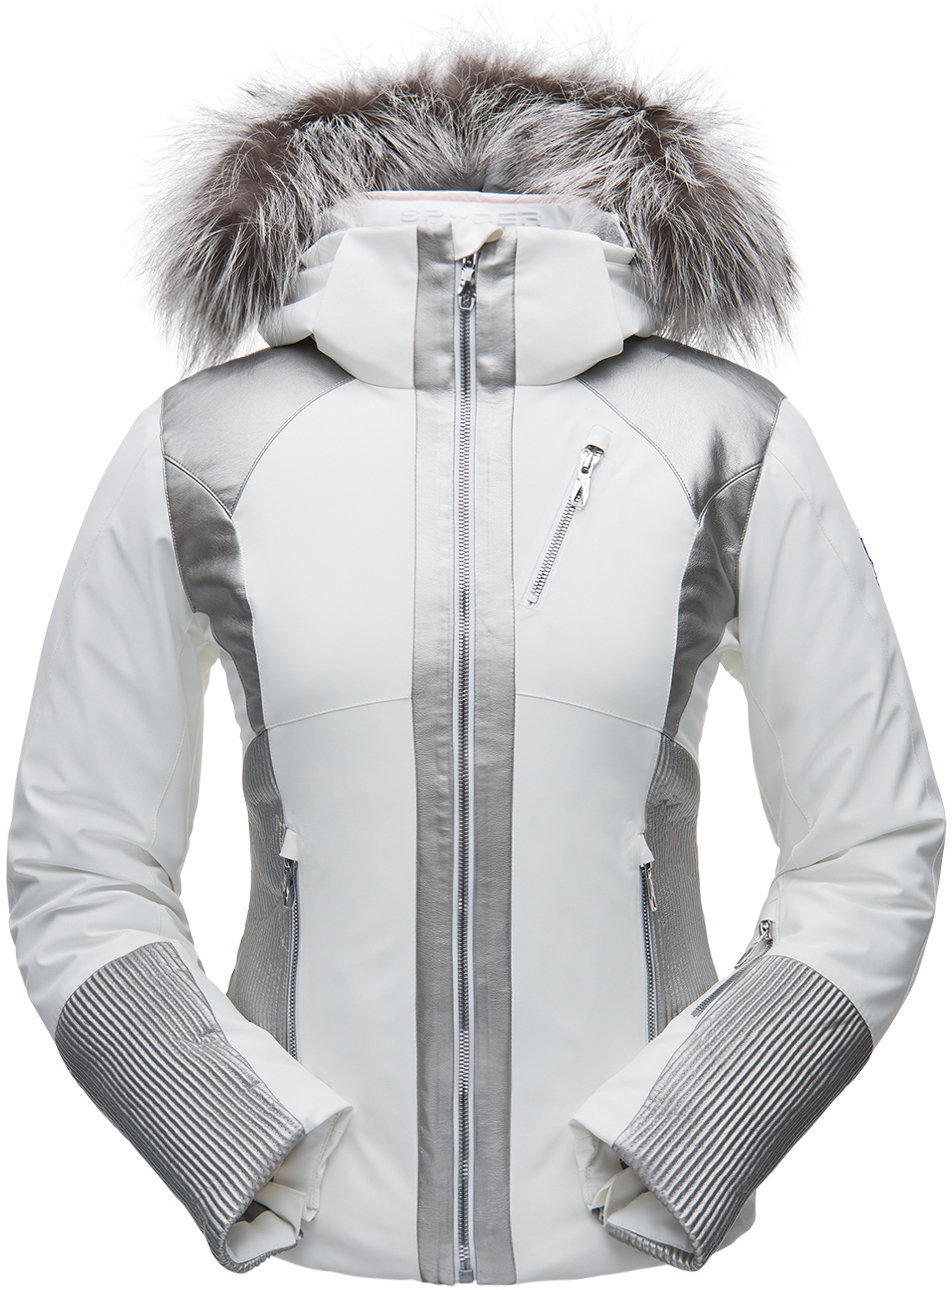 Jachetă schi Spyder Alb-Argintiu S